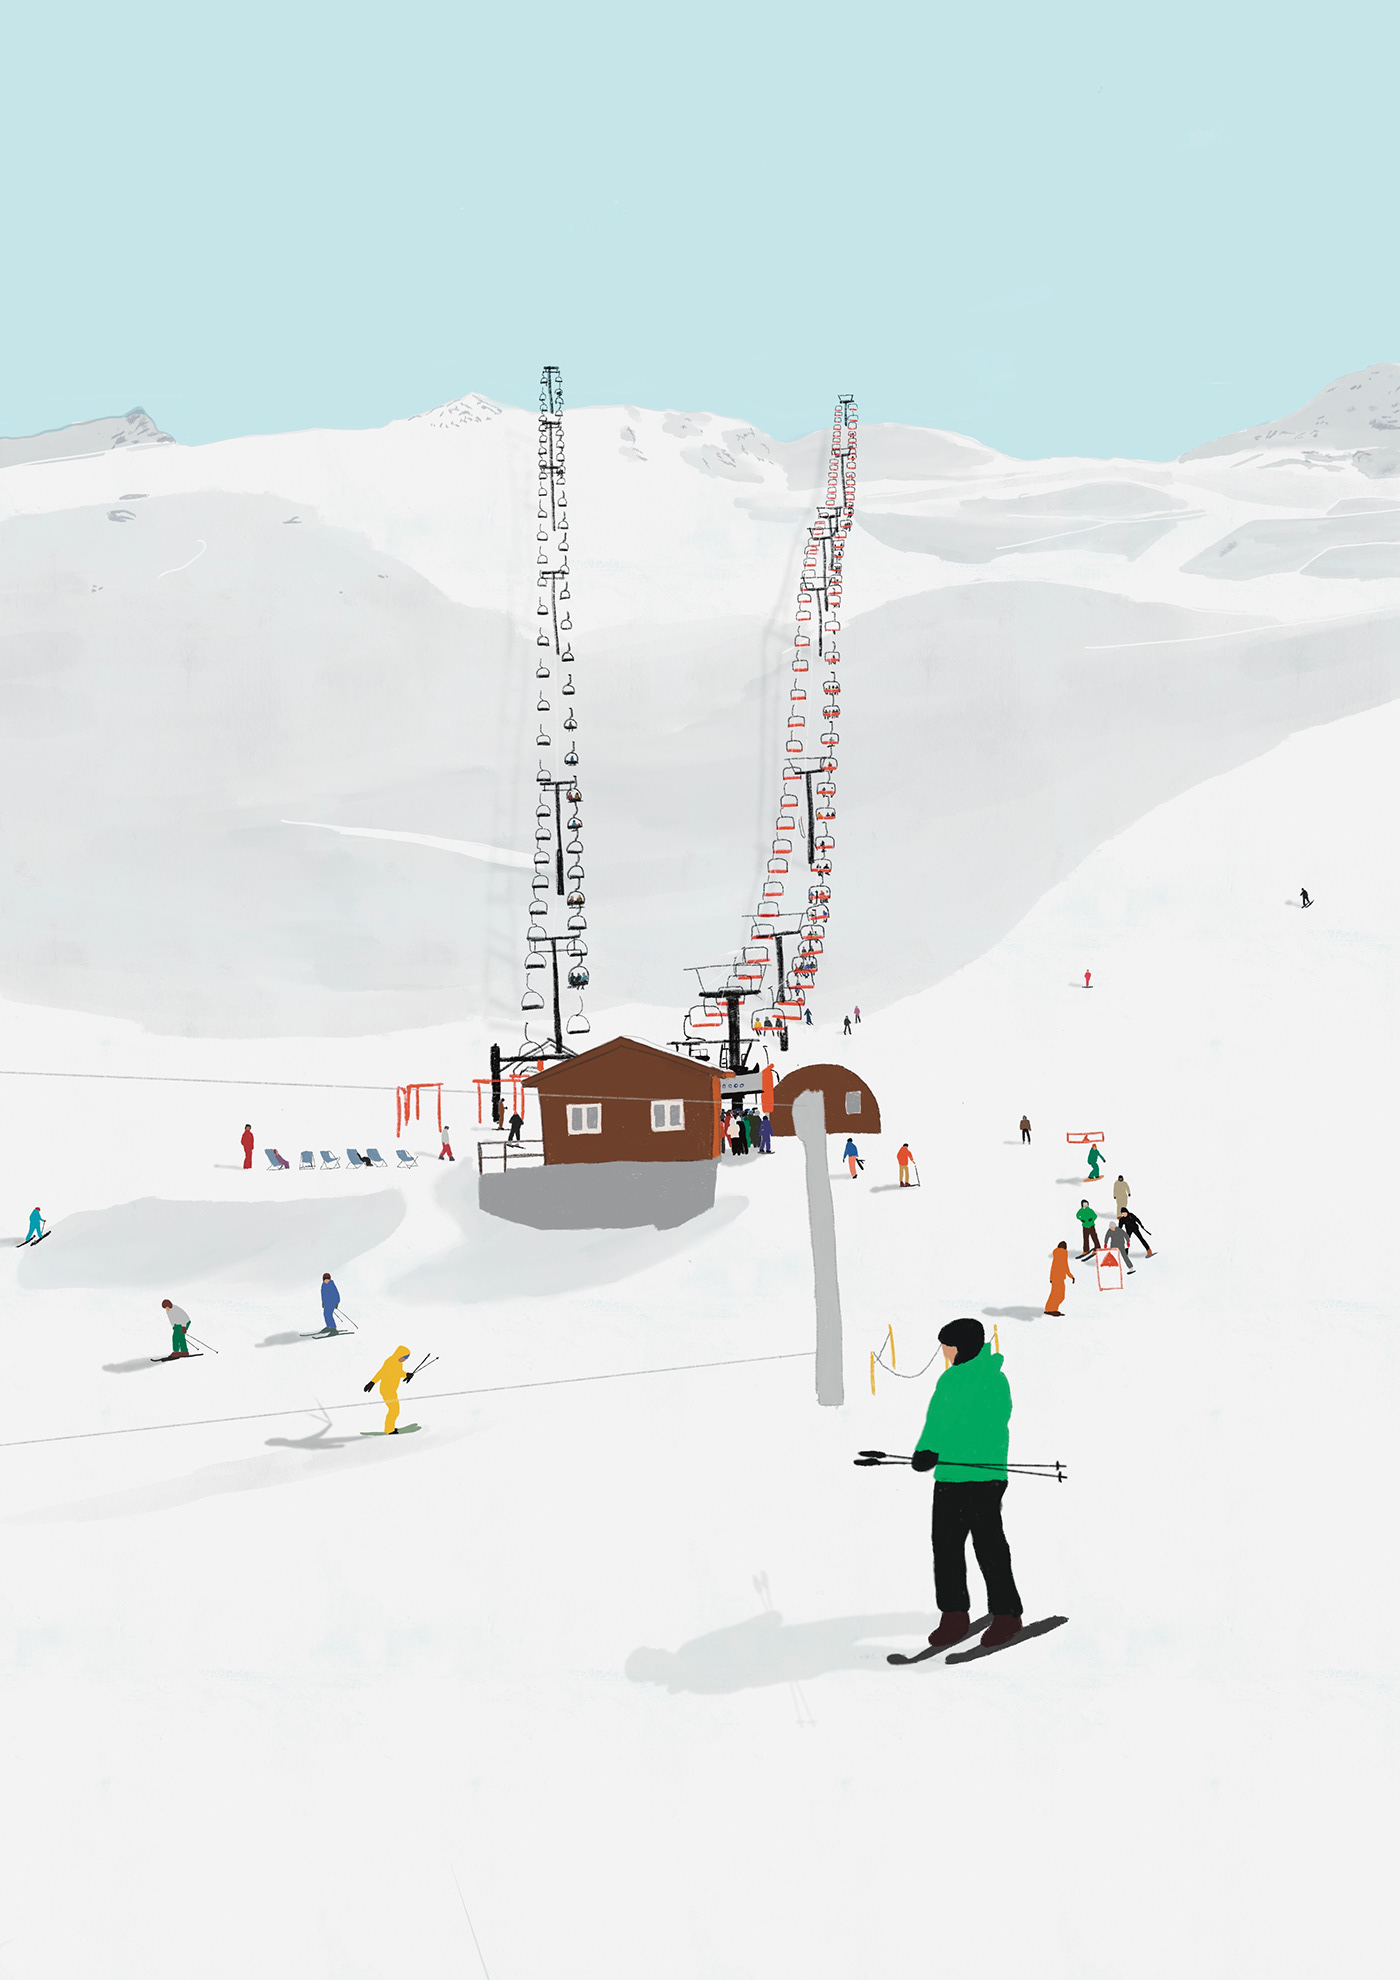 Digital Art  digital illustration ILLUSTRATION  Illustrator Procreate PROCREATE ART Ski ski station snow winter